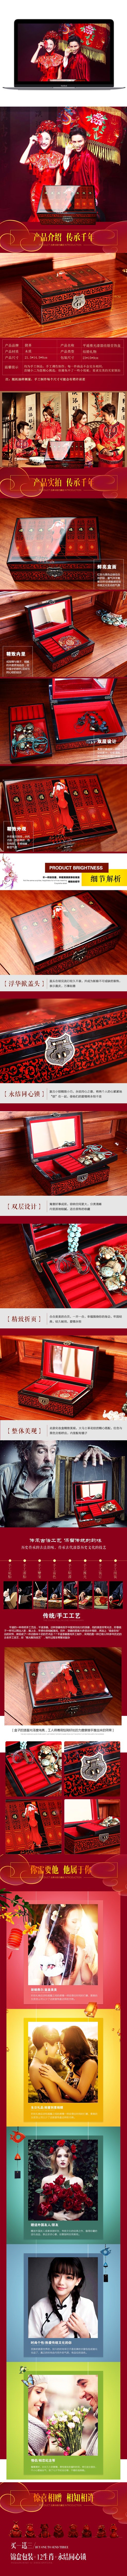 中式风格淘宝天猫婚礼礼盒详情页psd格式